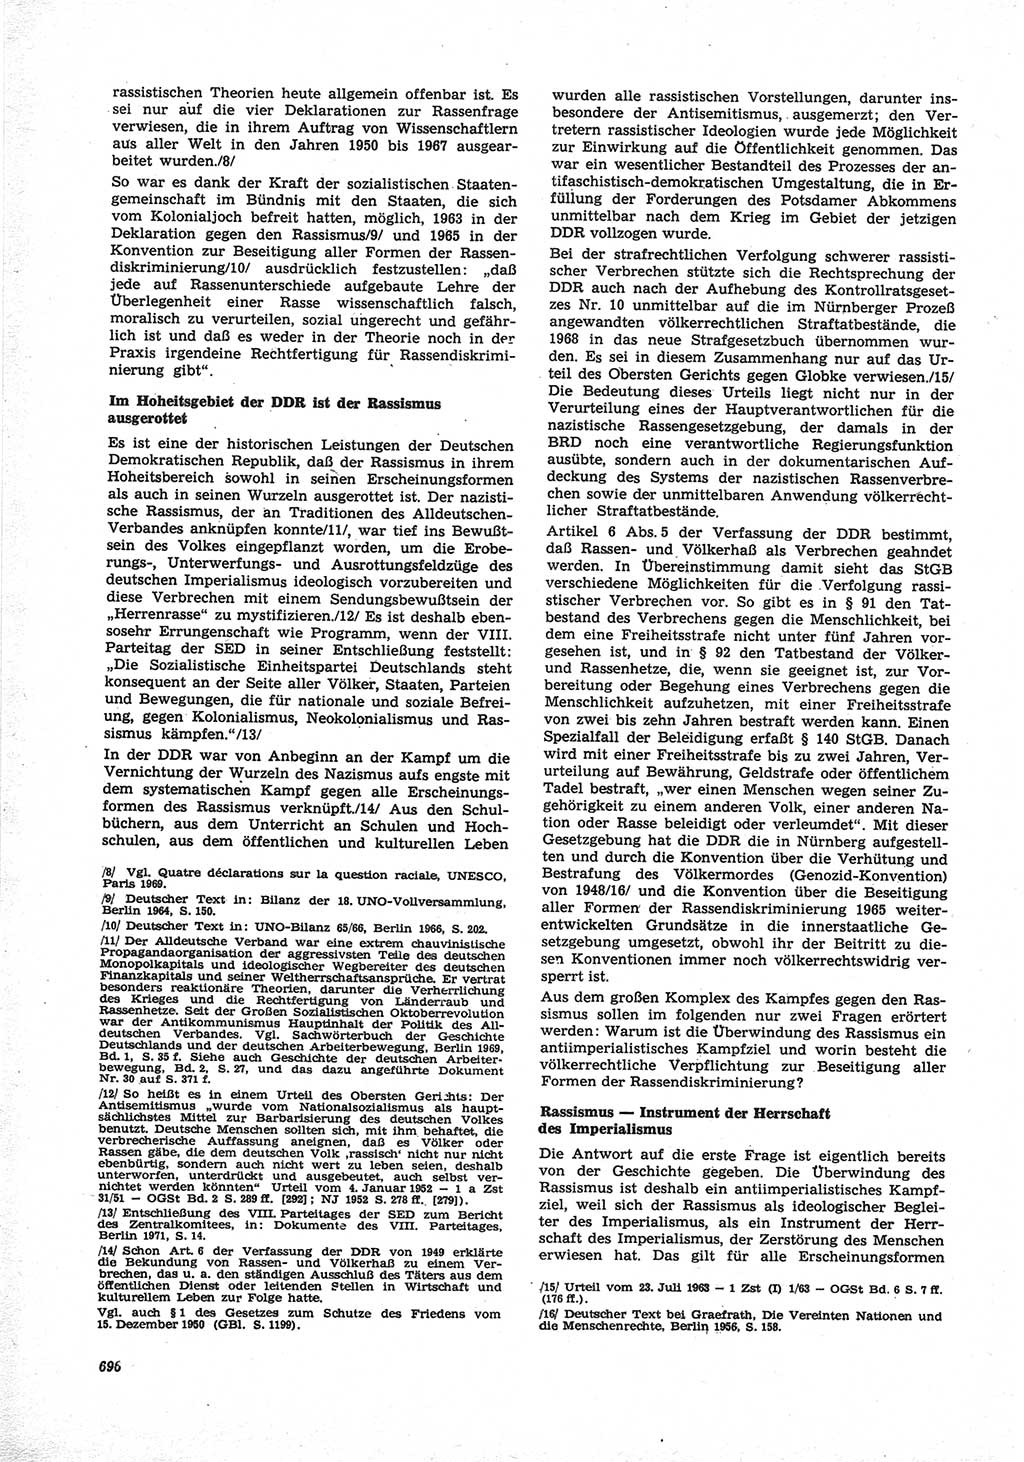 Neue Justiz (NJ), Zeitschrift für Recht und Rechtswissenschaft [Deutsche Demokratische Republik (DDR)], 25. Jahrgang 1971, Seite 696 (NJ DDR 1971, S. 696)